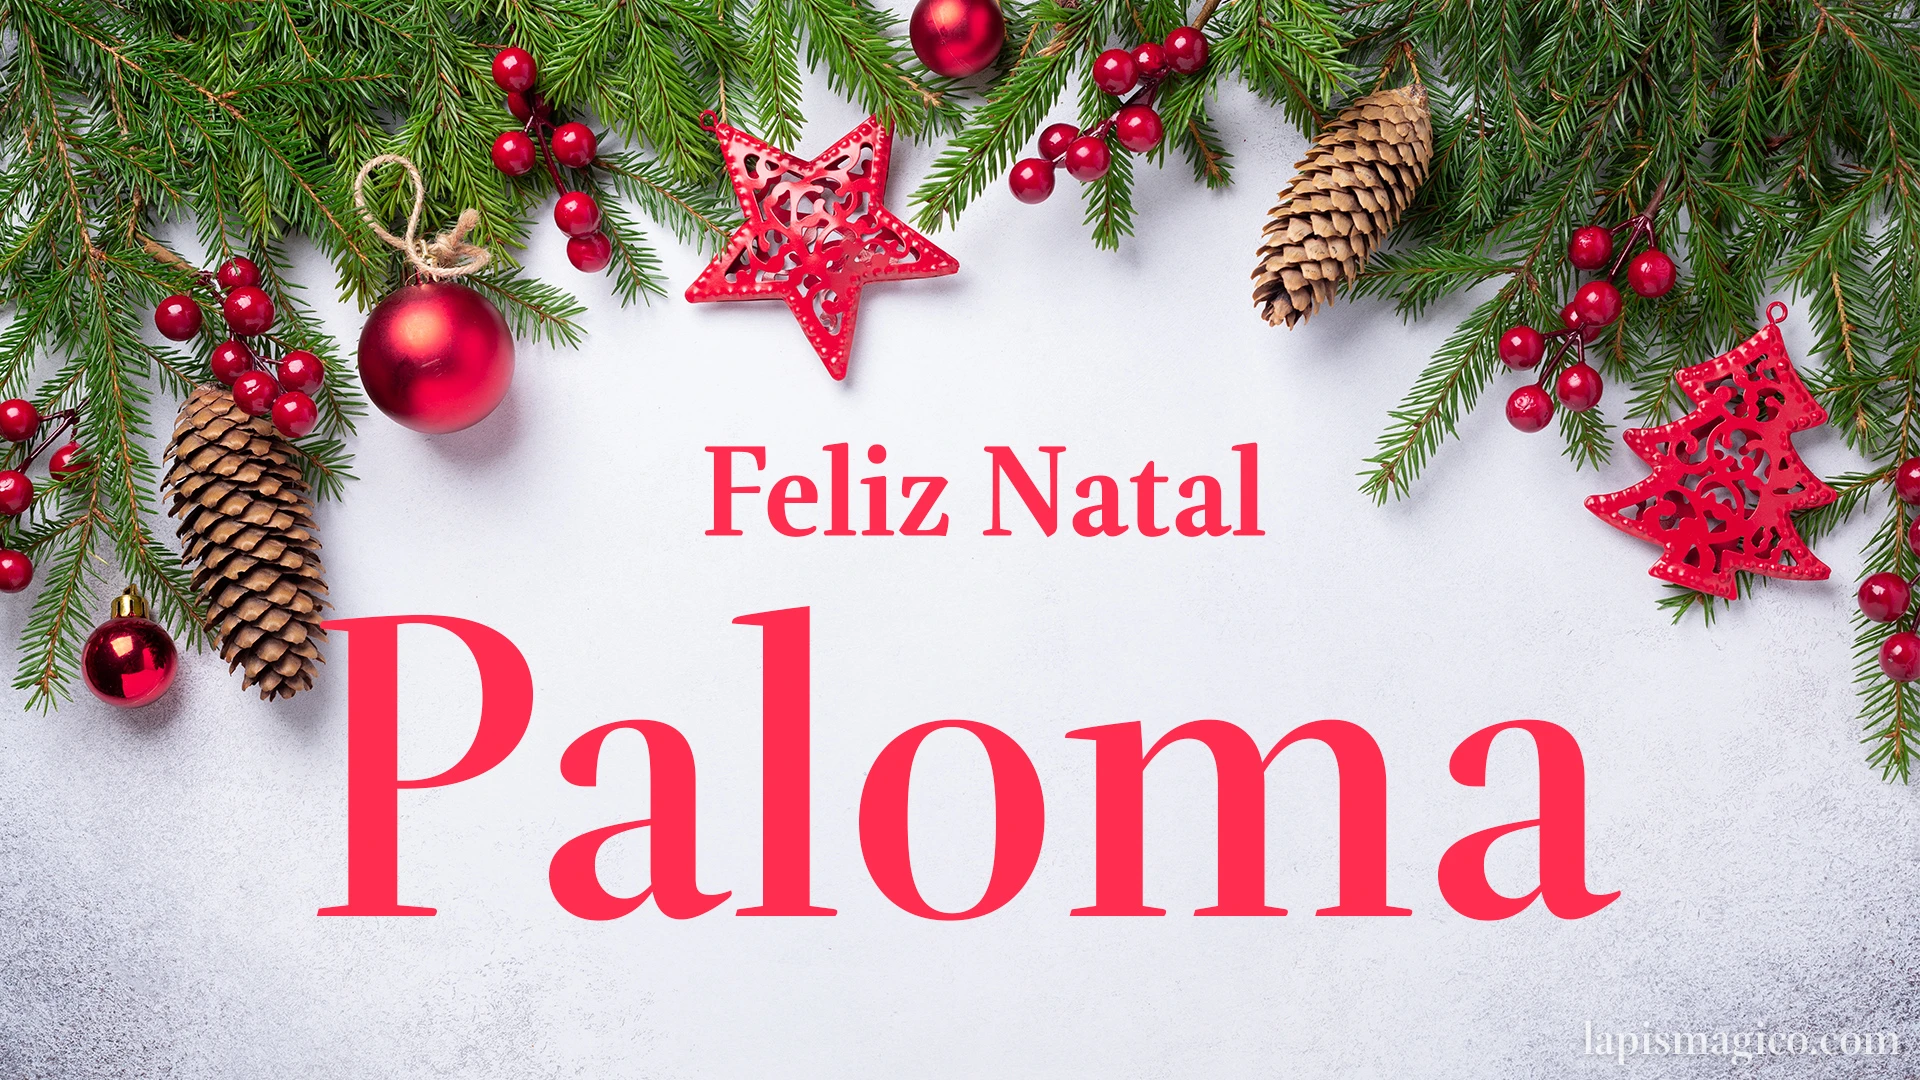 Oh Paloma, cinco postais de Feliz Natal Postal com o teu nome